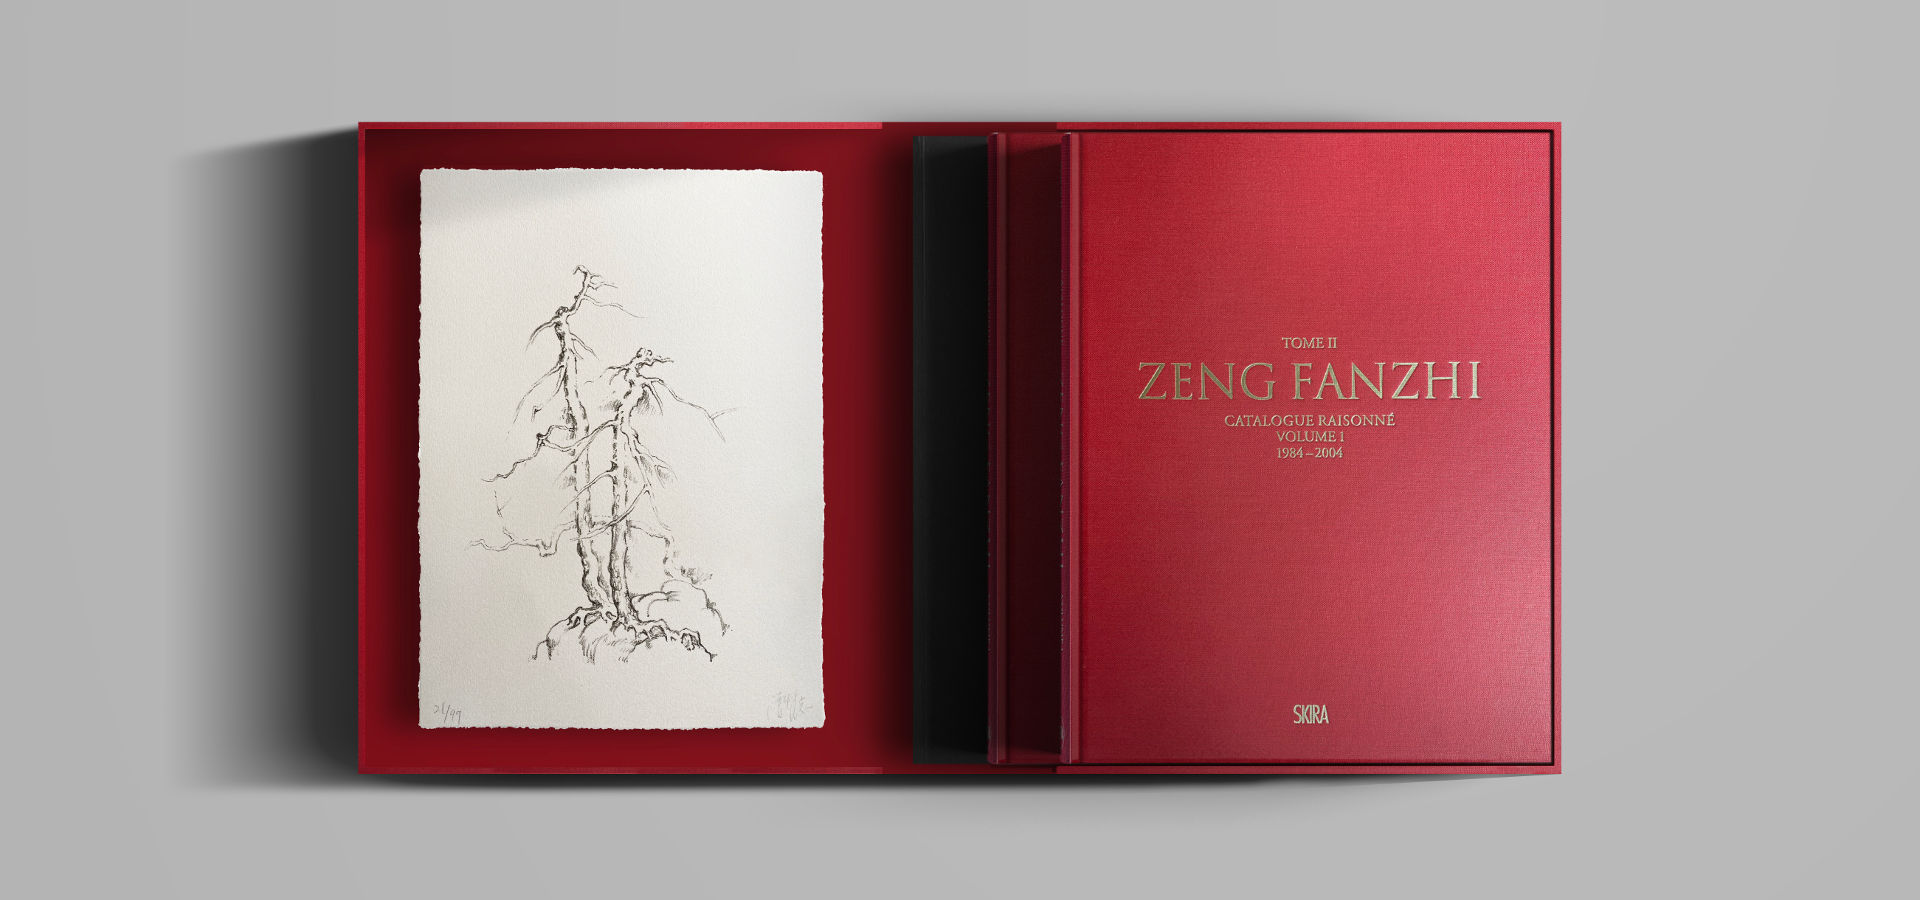 Zeng Fanzhi - Catalogue raisonné. Volume I